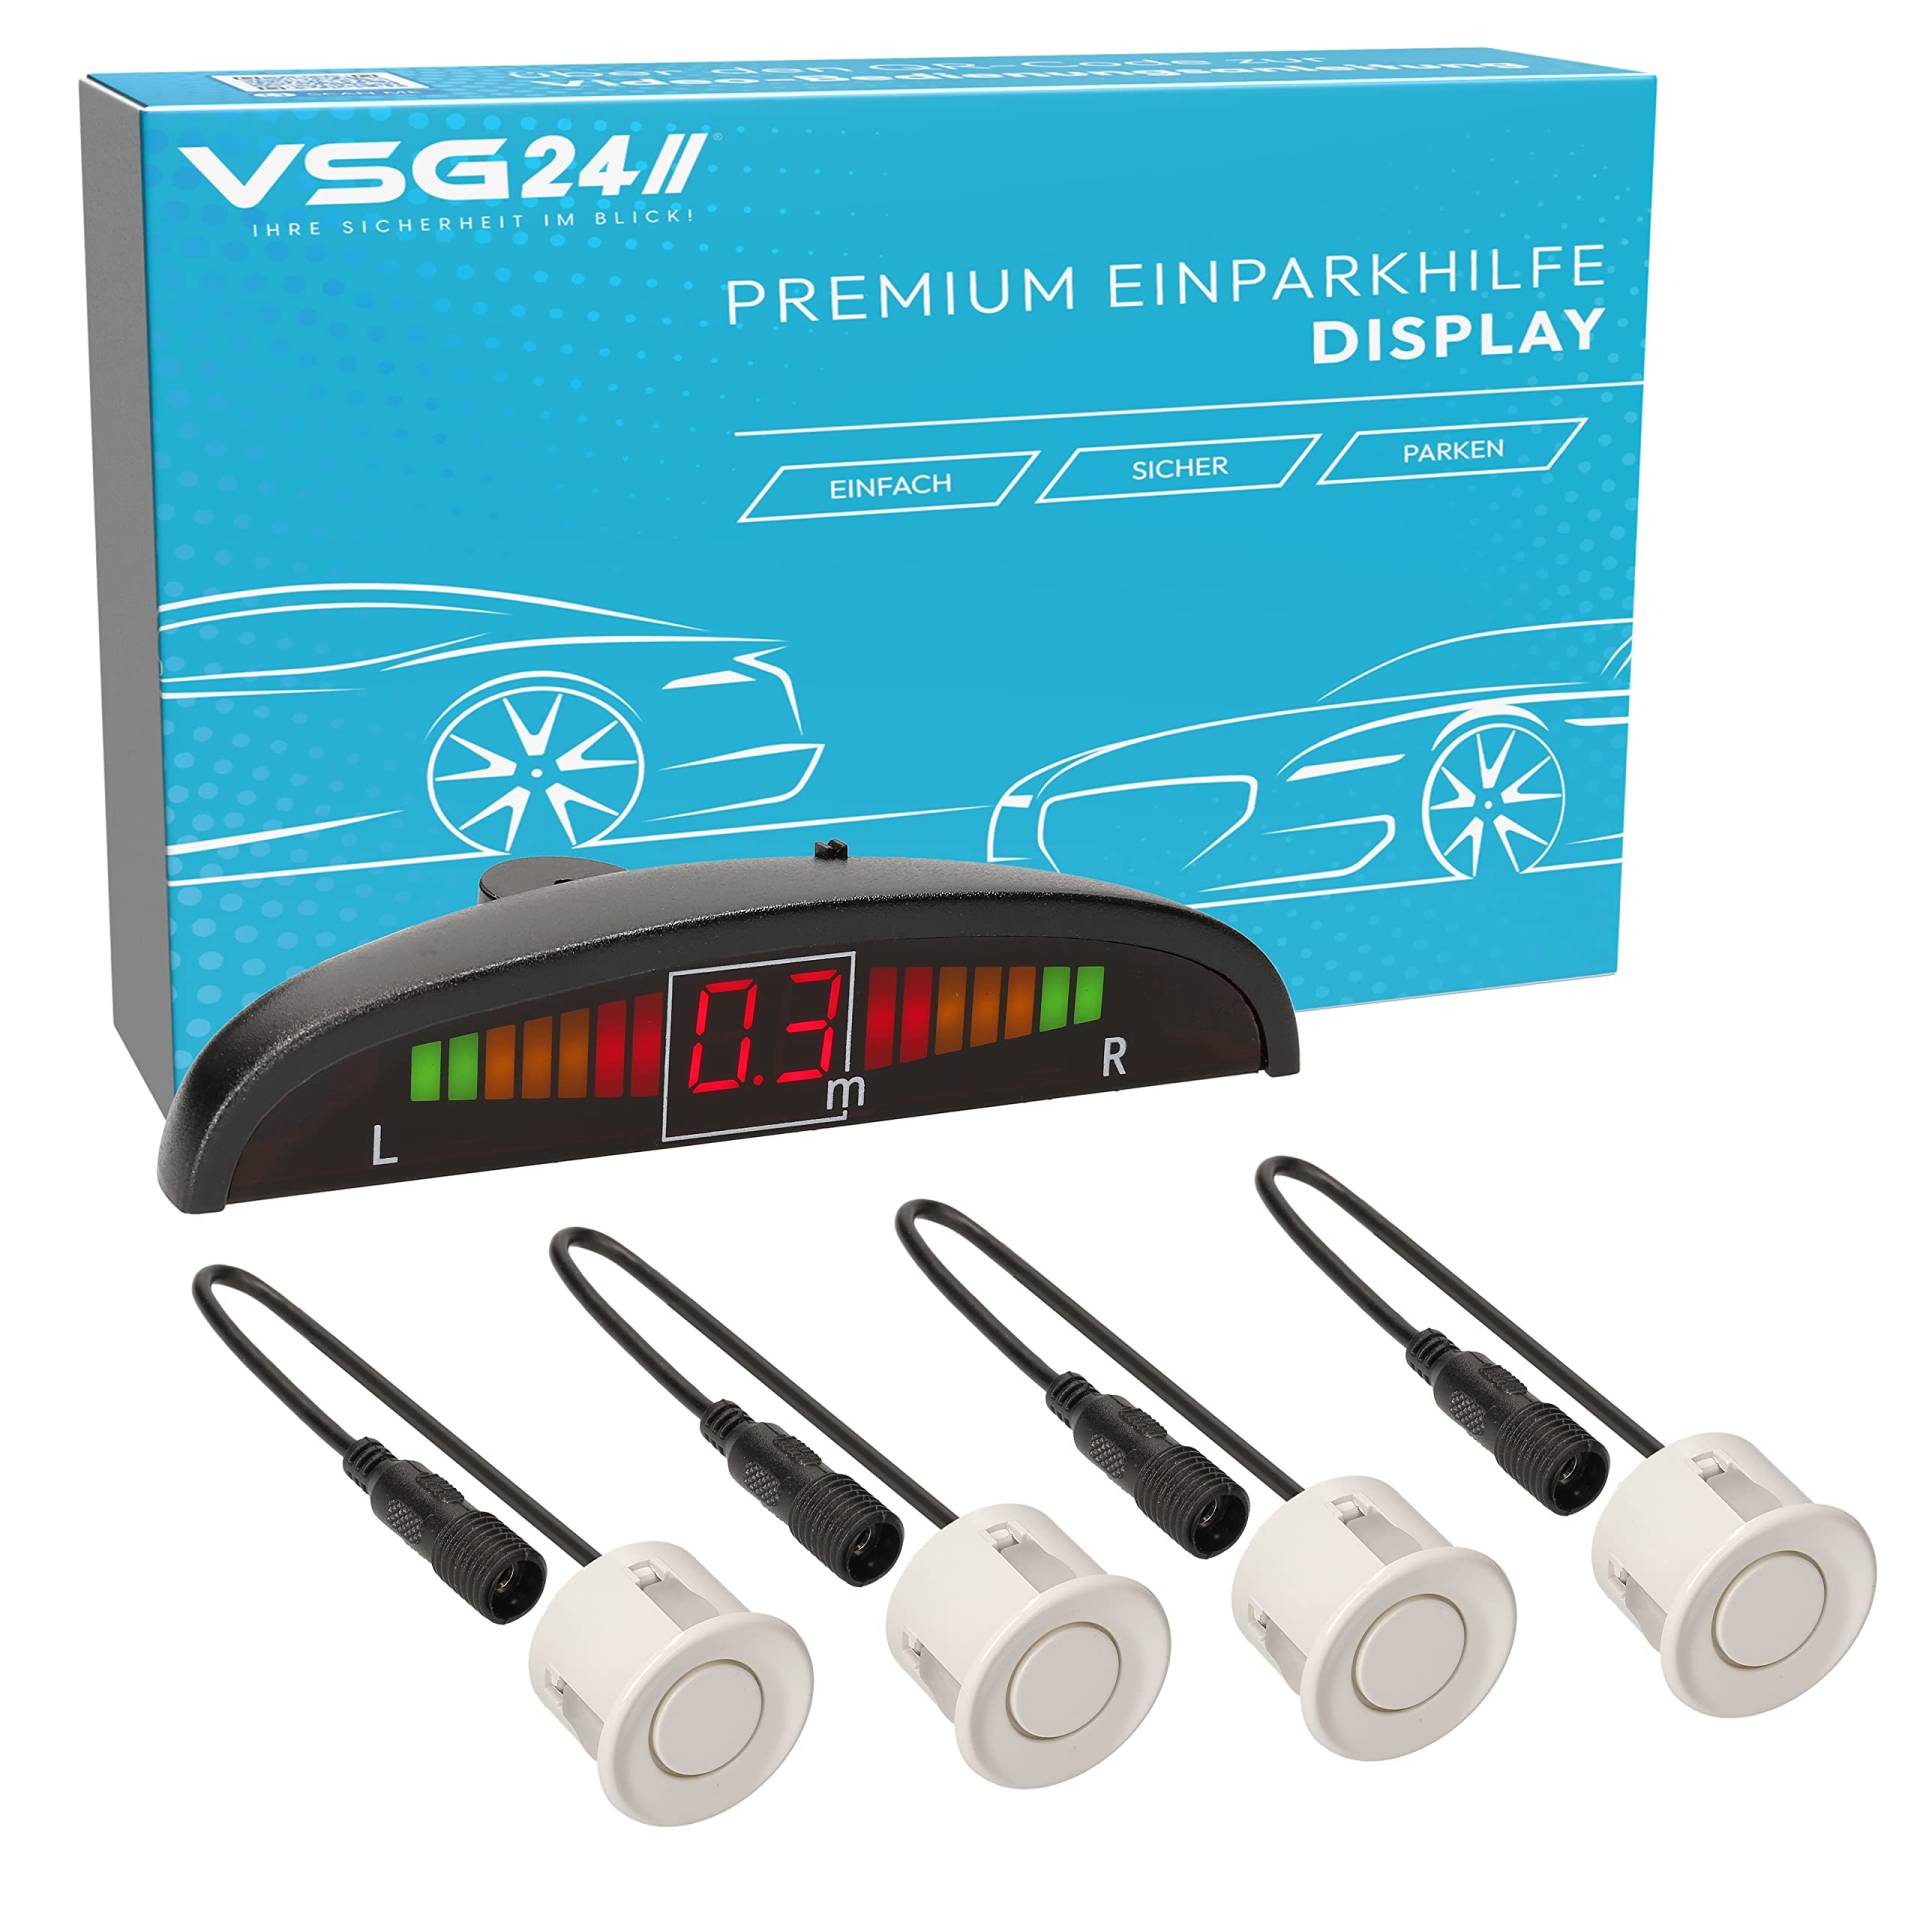 VSG24 Premium Einparkhilfe hinten mit Display zum nachrüsten am Auto, PDC Parksensoren hinten mit Stecksystem für einfachste Montage - 4 Rückfahrwarner Sensoren Parkhilfe Nachrüstsatz Weiß von VSG